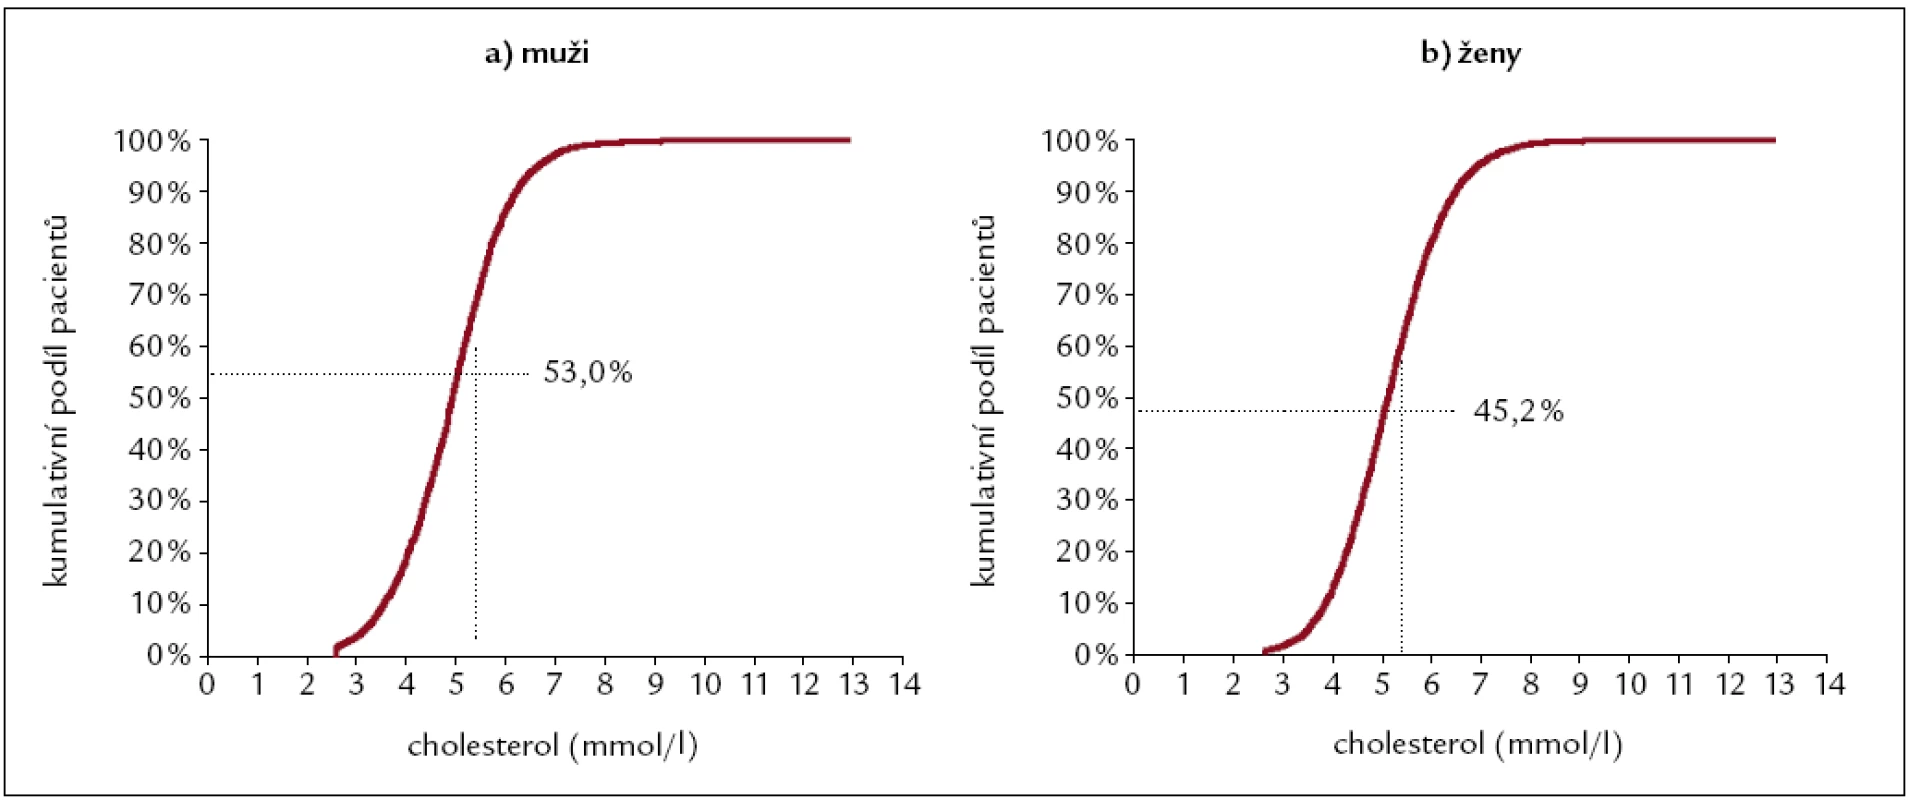 Výběrové distribuční funkce pro cholesterol u mužů a žen.